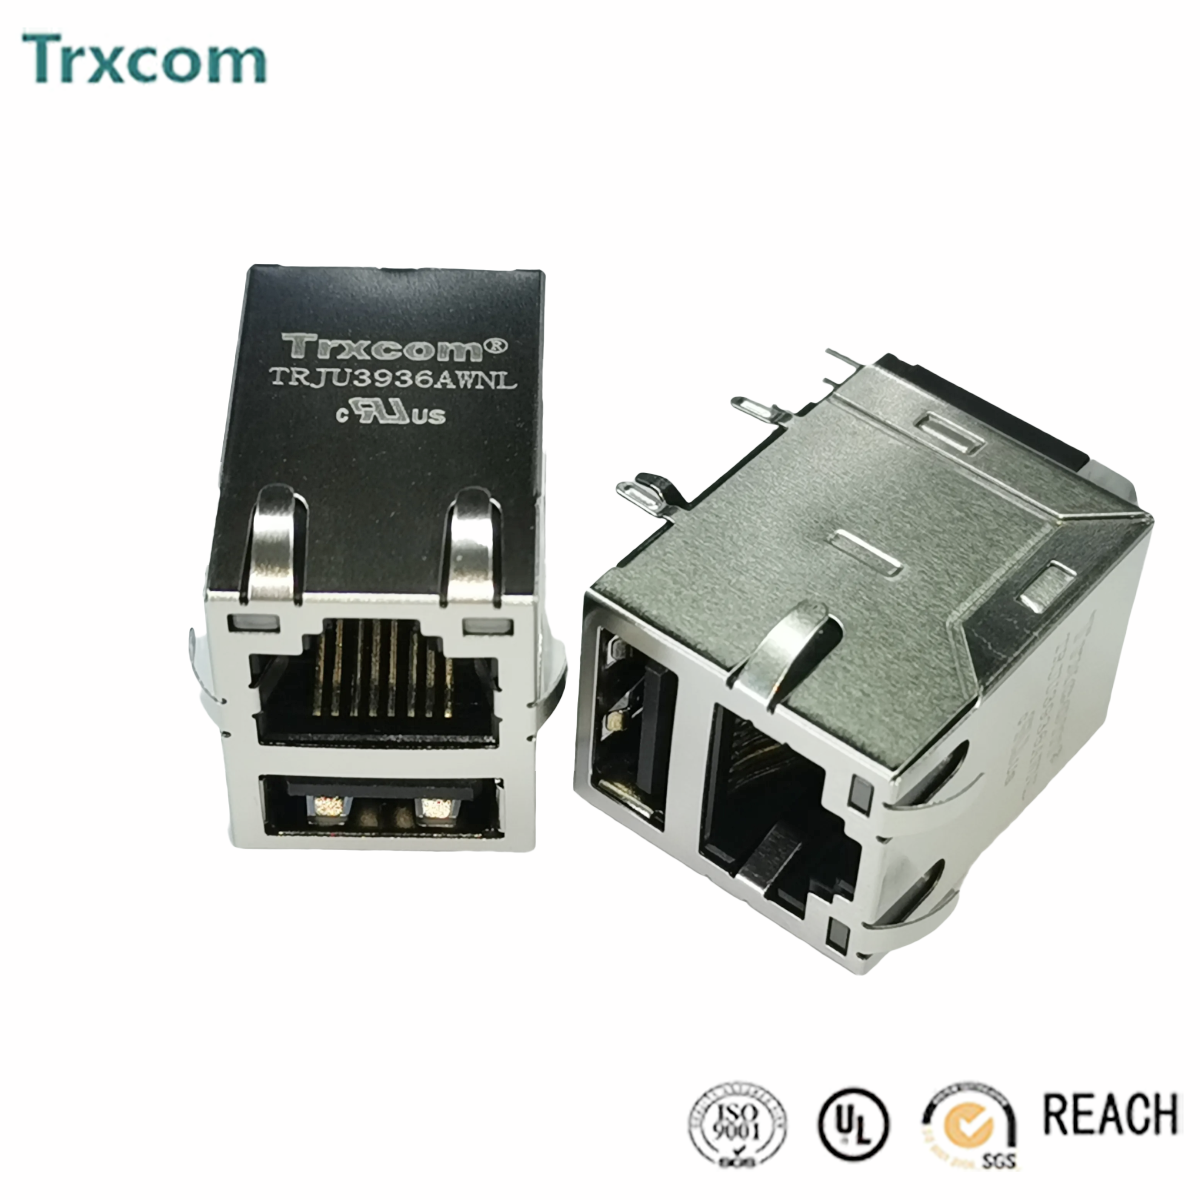 泰瑞康trxcom油浸式集成网络滤波器议定速发详情联系